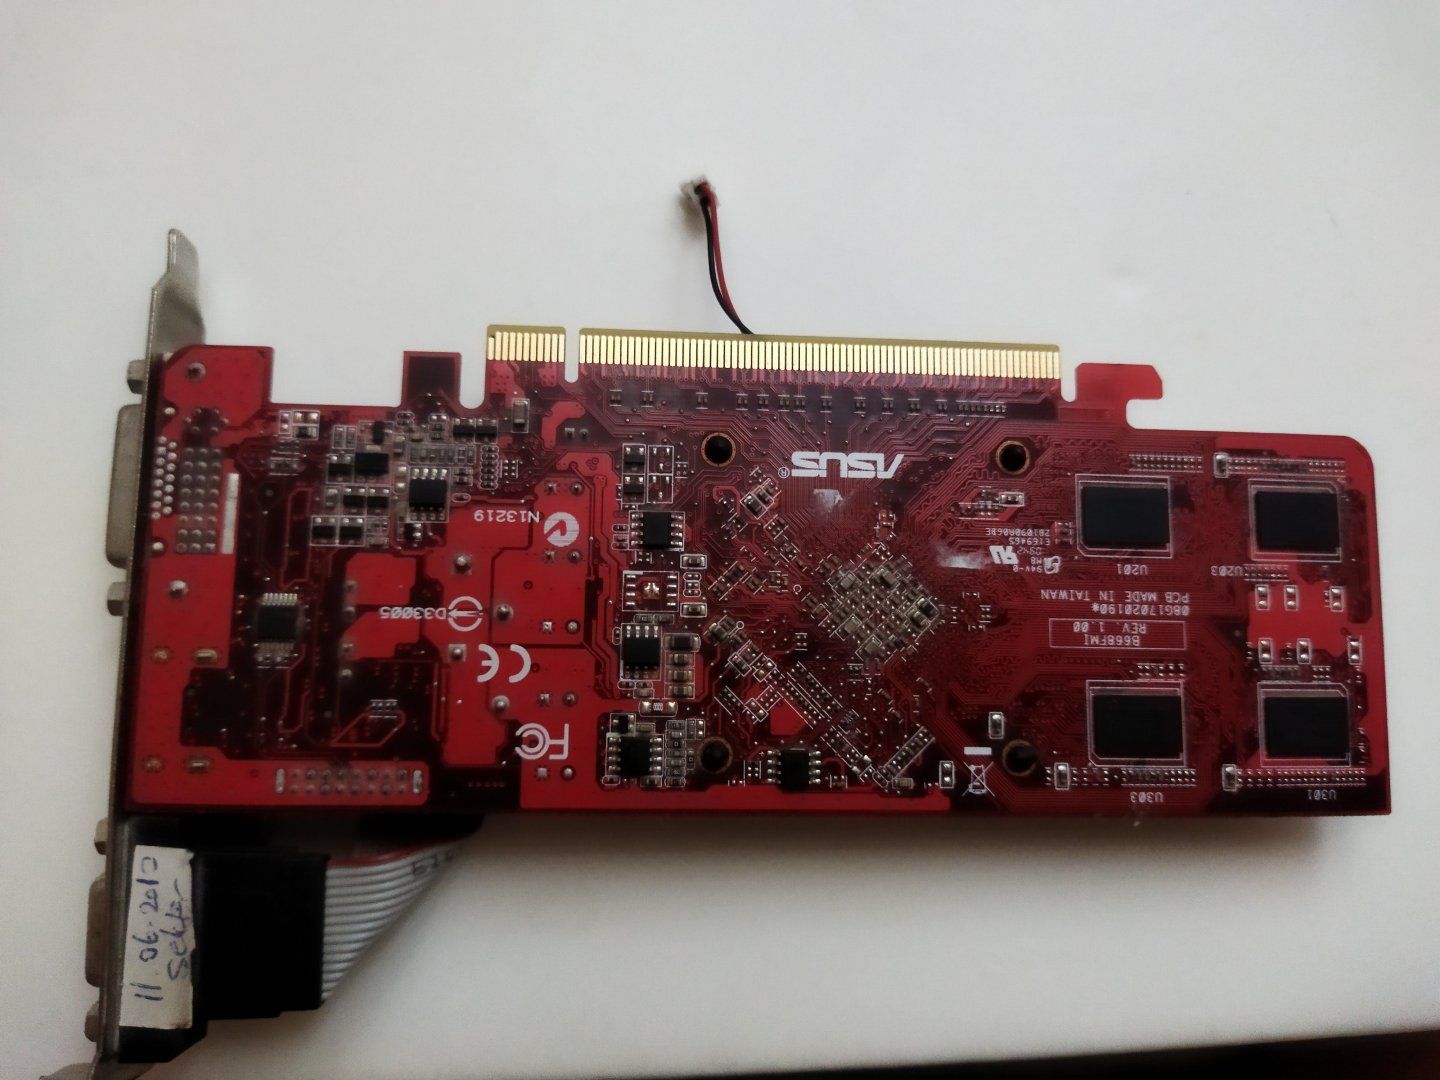 ATI Radeon HD 4600 series ekran kartı fanı nasıl çıkarılır? | Technopat  Sosyal